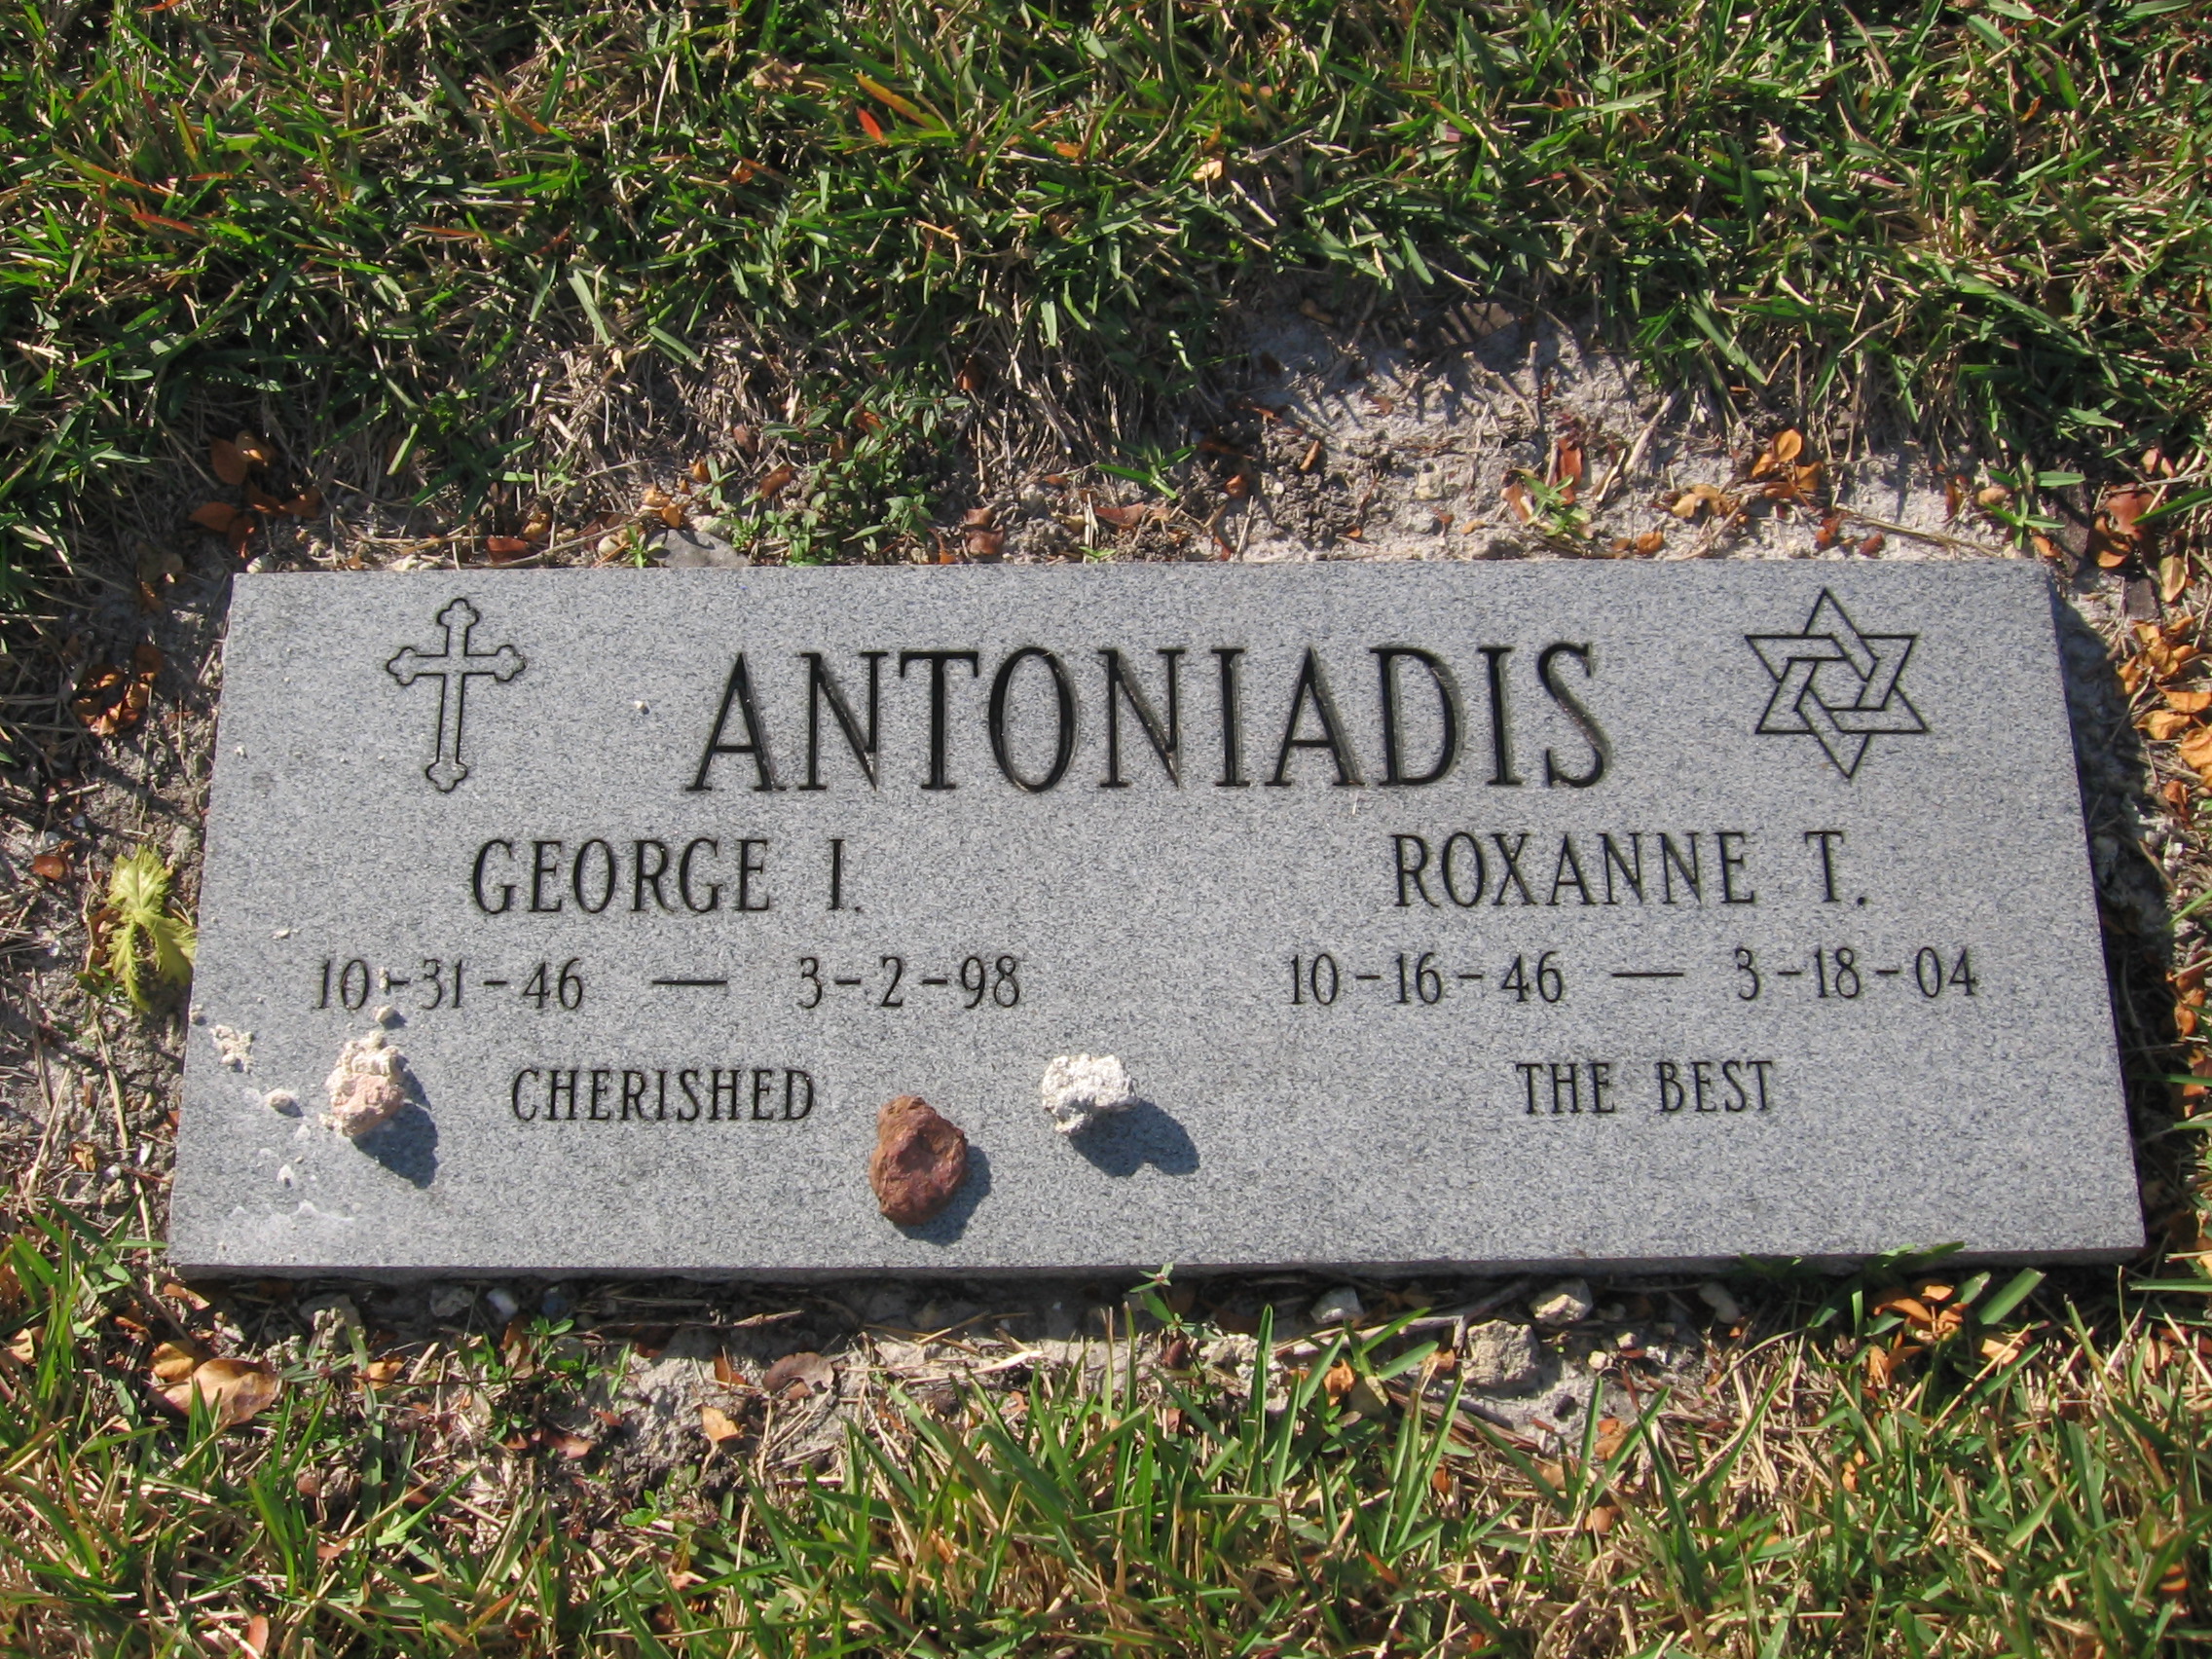 George I Antoniadis